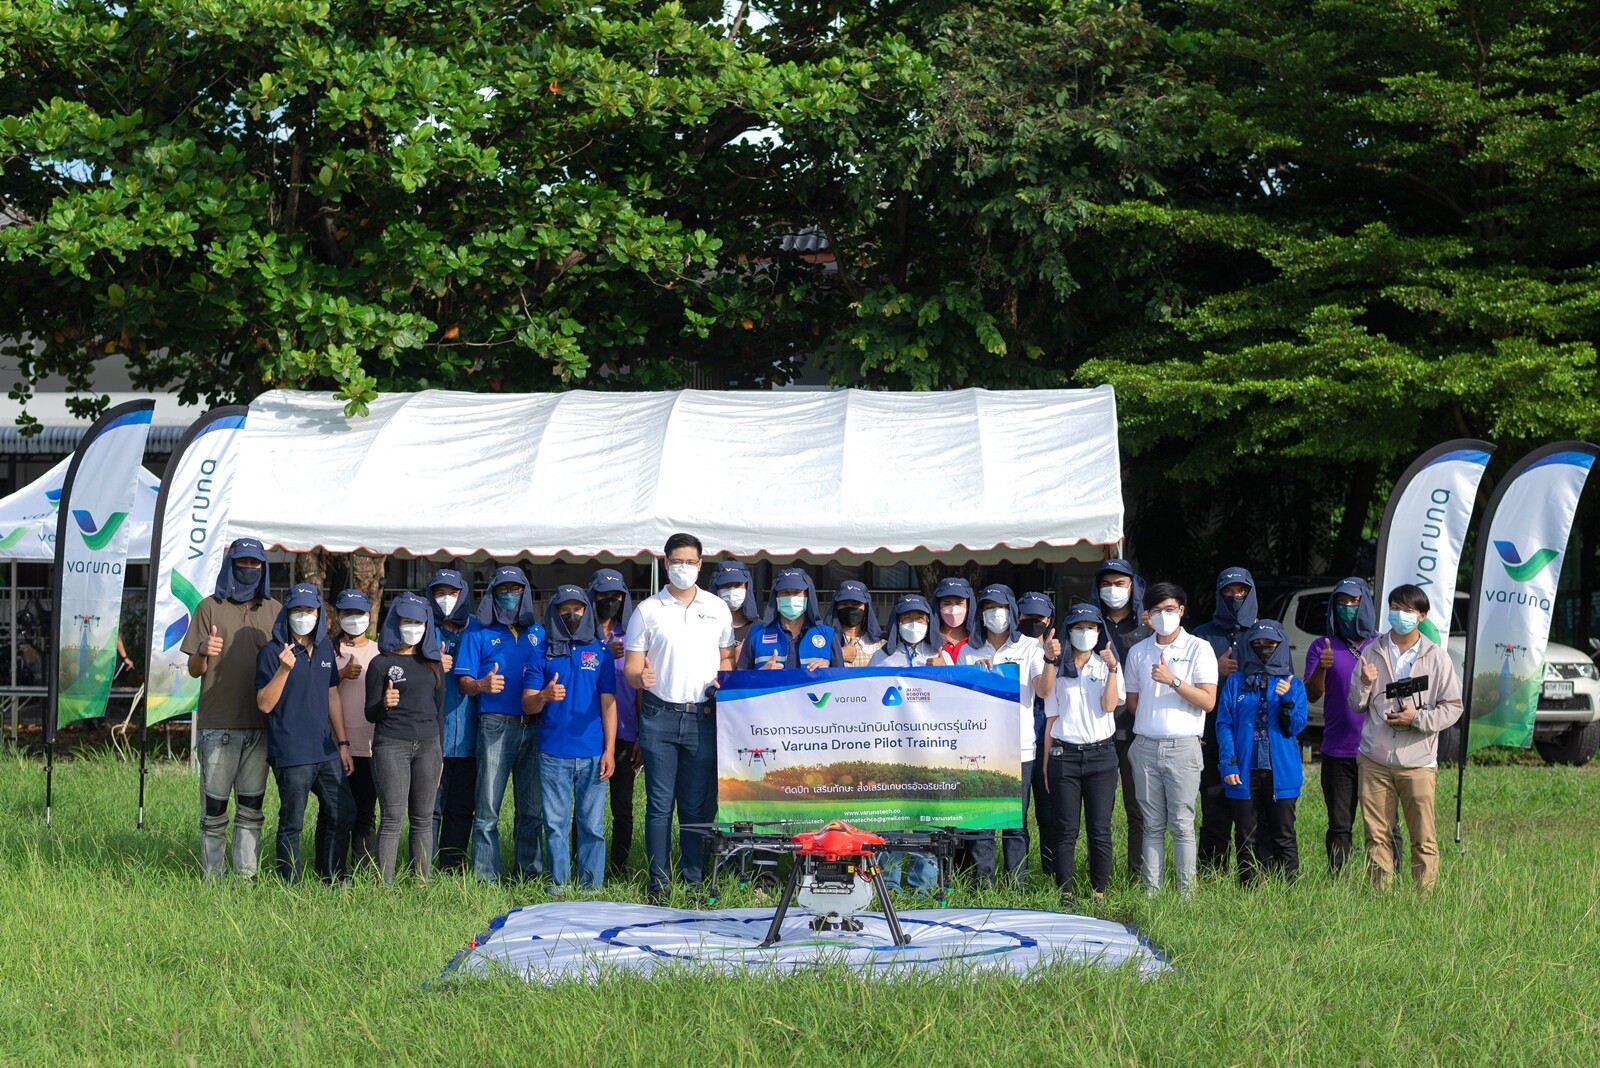 VARUNA ผู้นำด้านเทคโนโลยีเพื่อการเกษตรของไทย ภายใต้เครือ ARV  ผนึก Samsung สร้างสรรค์โครงการ "อบรมทักษะการบินโดรนแก่เกษตรกร" มุ่งพลิกโฉมเกษตรกรรมไทยสู่ยุคสมาร์ทฟาร์ม